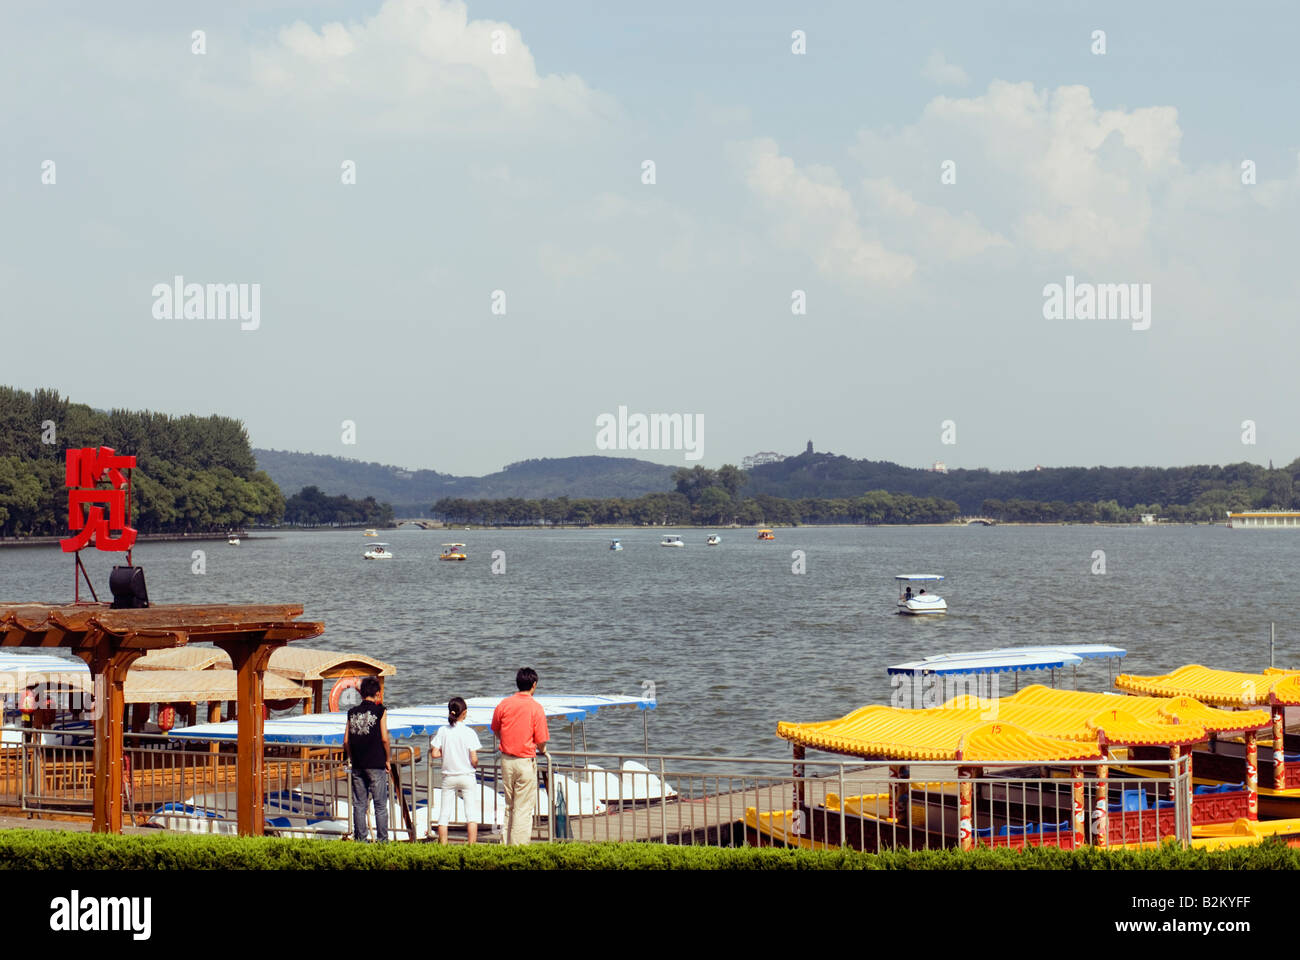 China, Nanjing, Xuanwu Lake Stock Photo